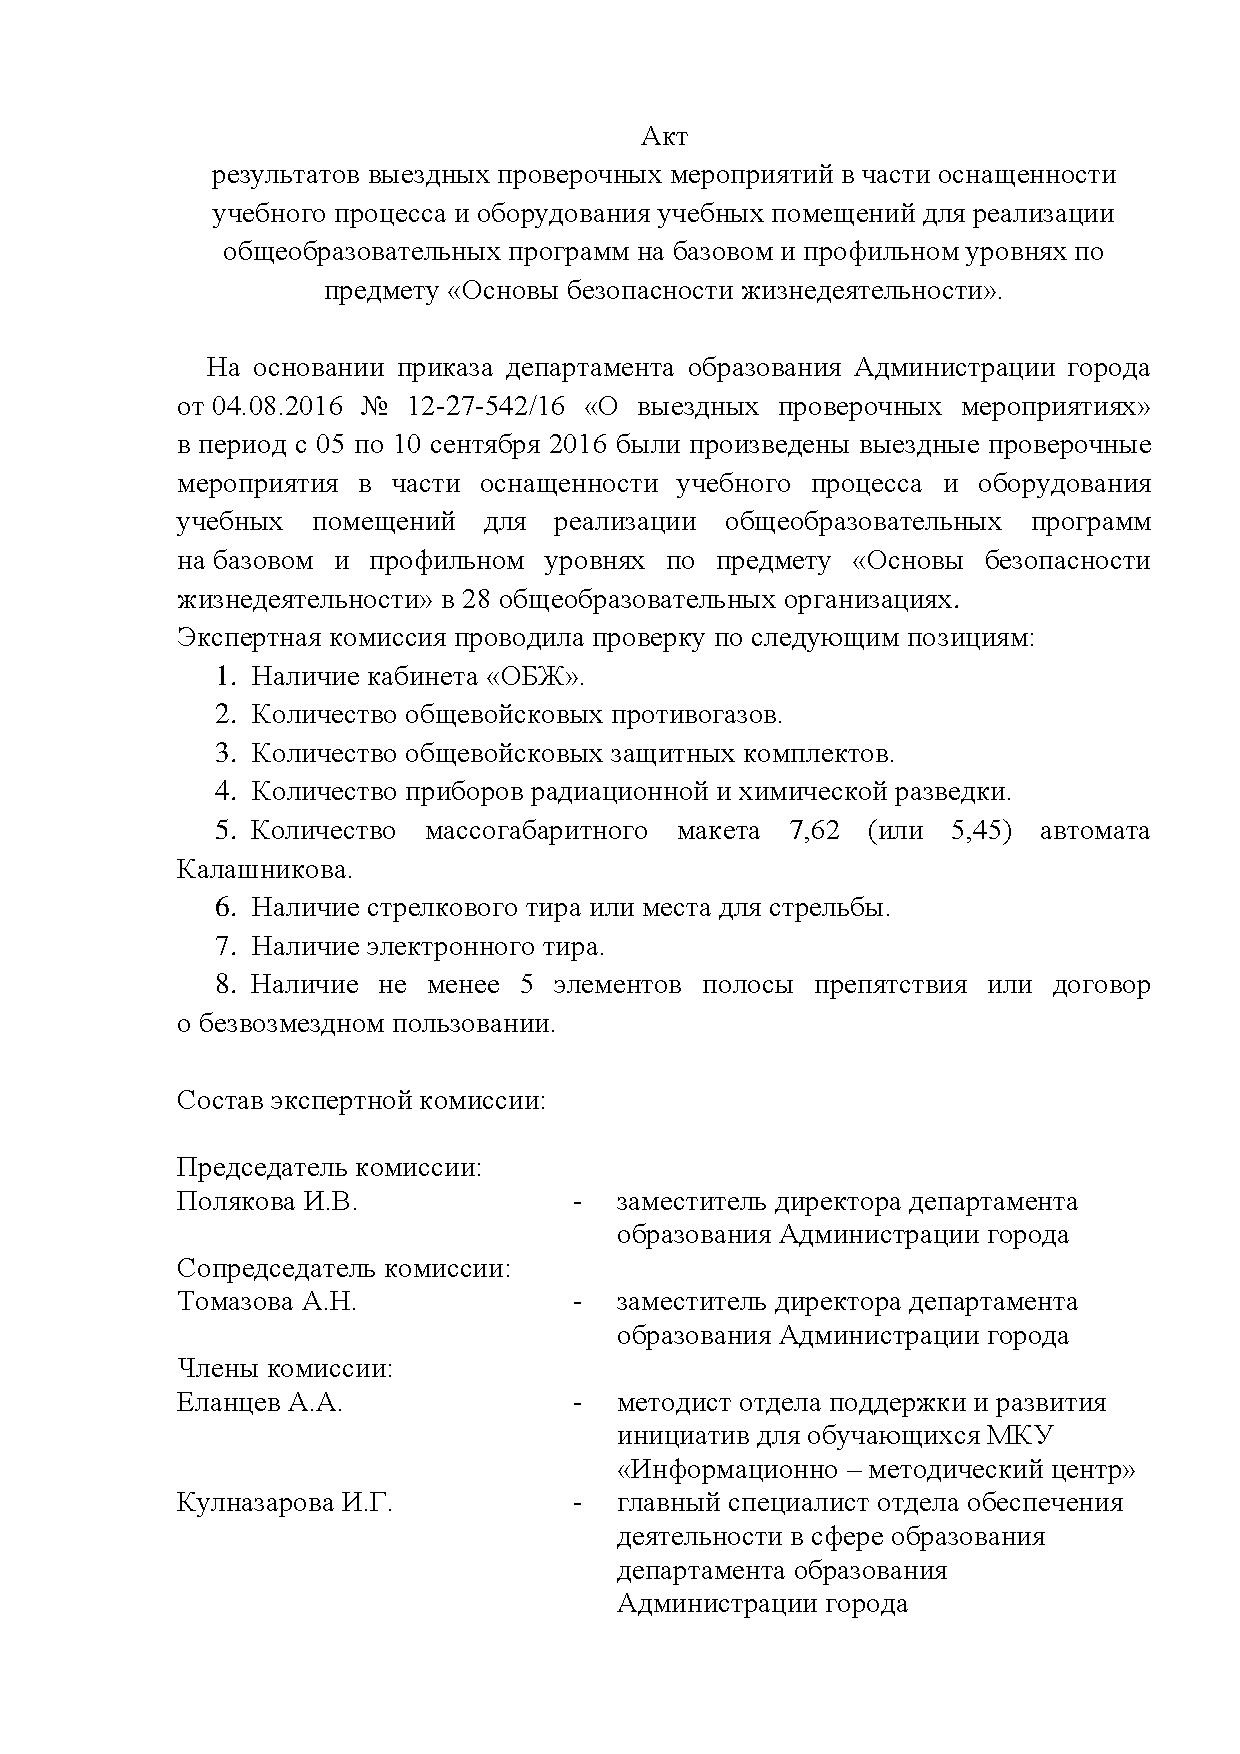 Акт выездных проверочных мероприятий.pdf